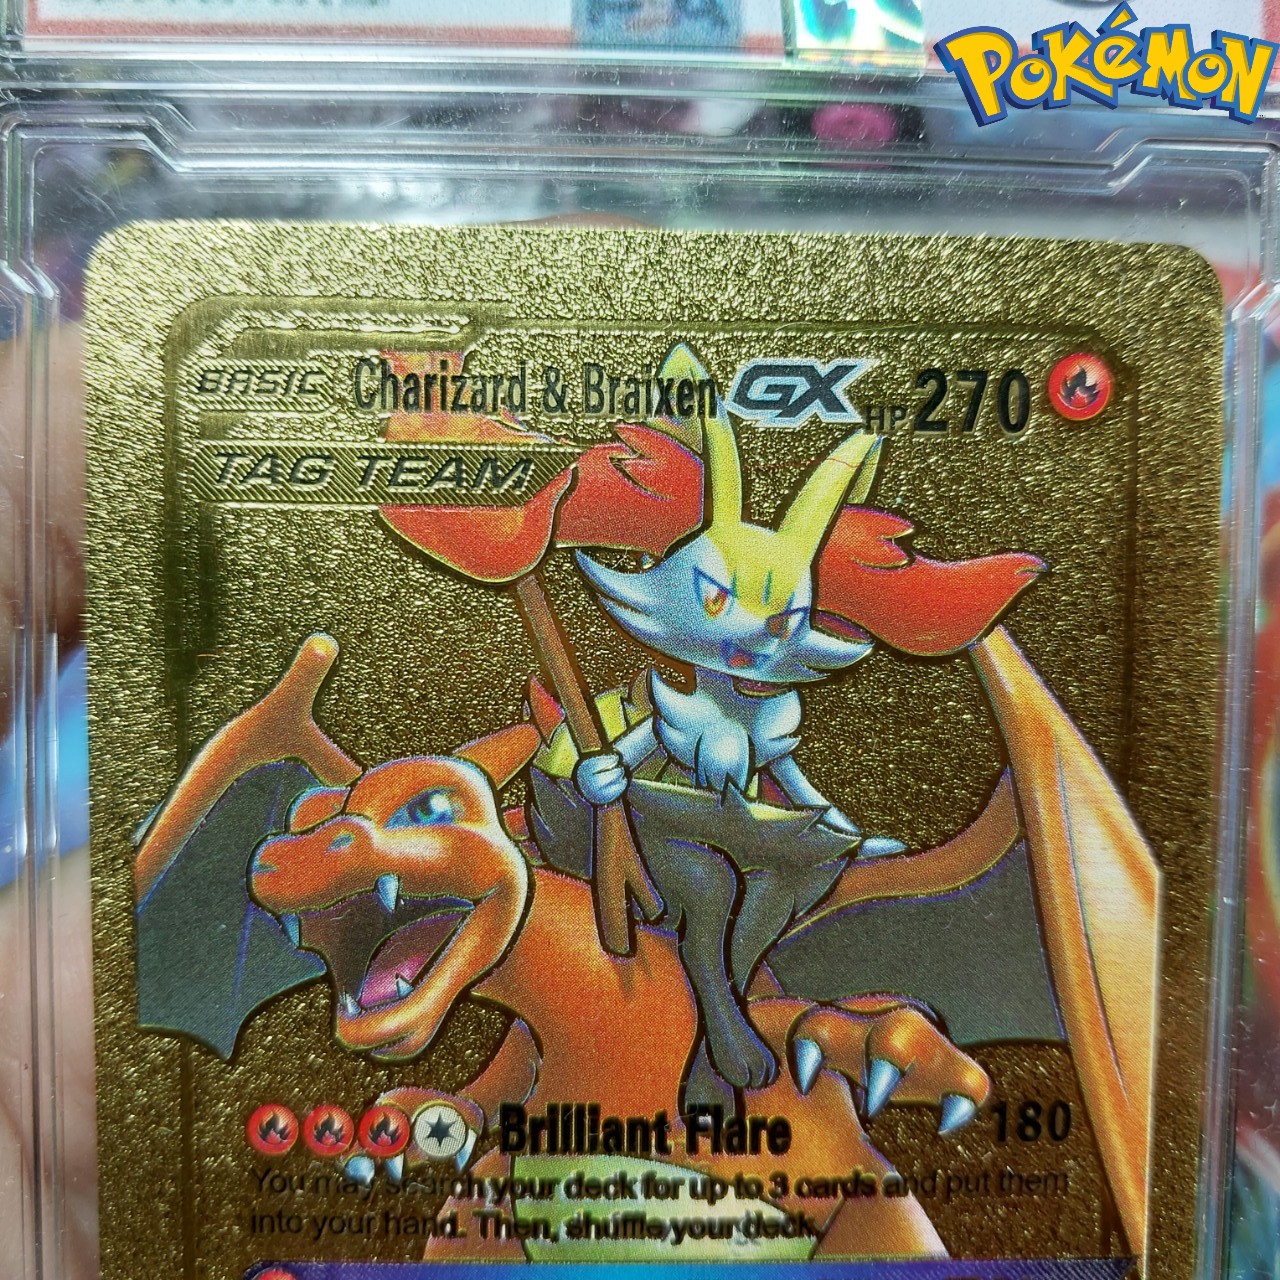 Charizard &amp; Braixen GX thẻ pokemon nhôm mạ vàng gia đình khủng long lửa Tặng kèm bảo vệ thẻ 1459 d24 1-32